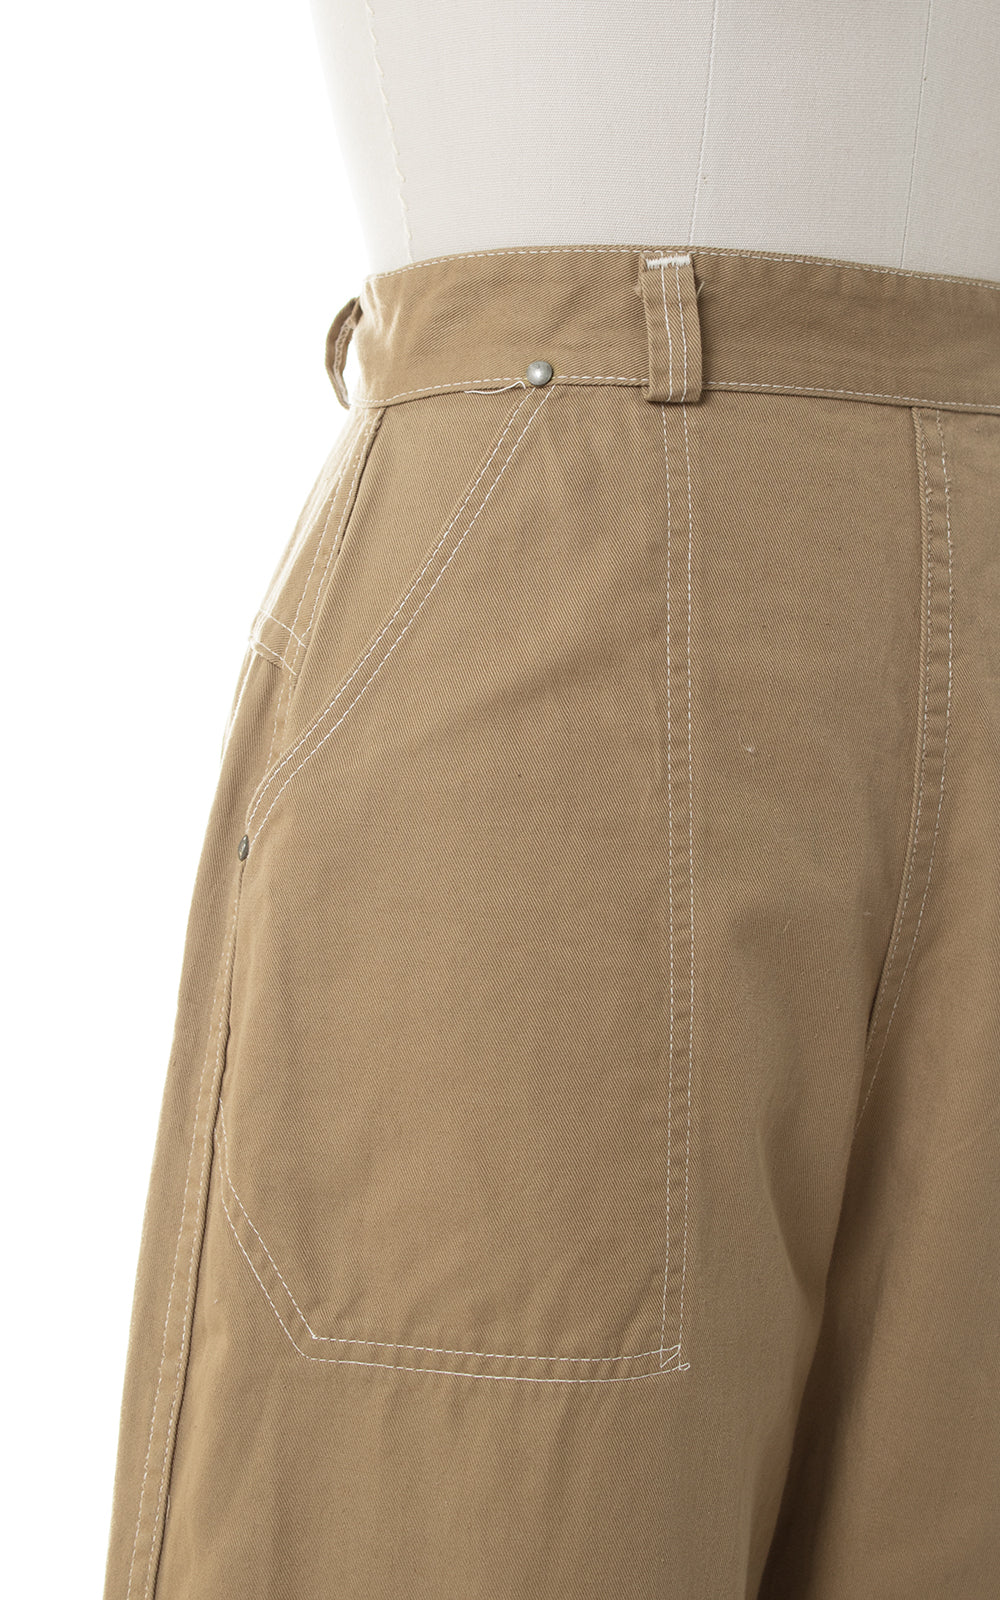 1950s Khaki High Waist Capri Pants